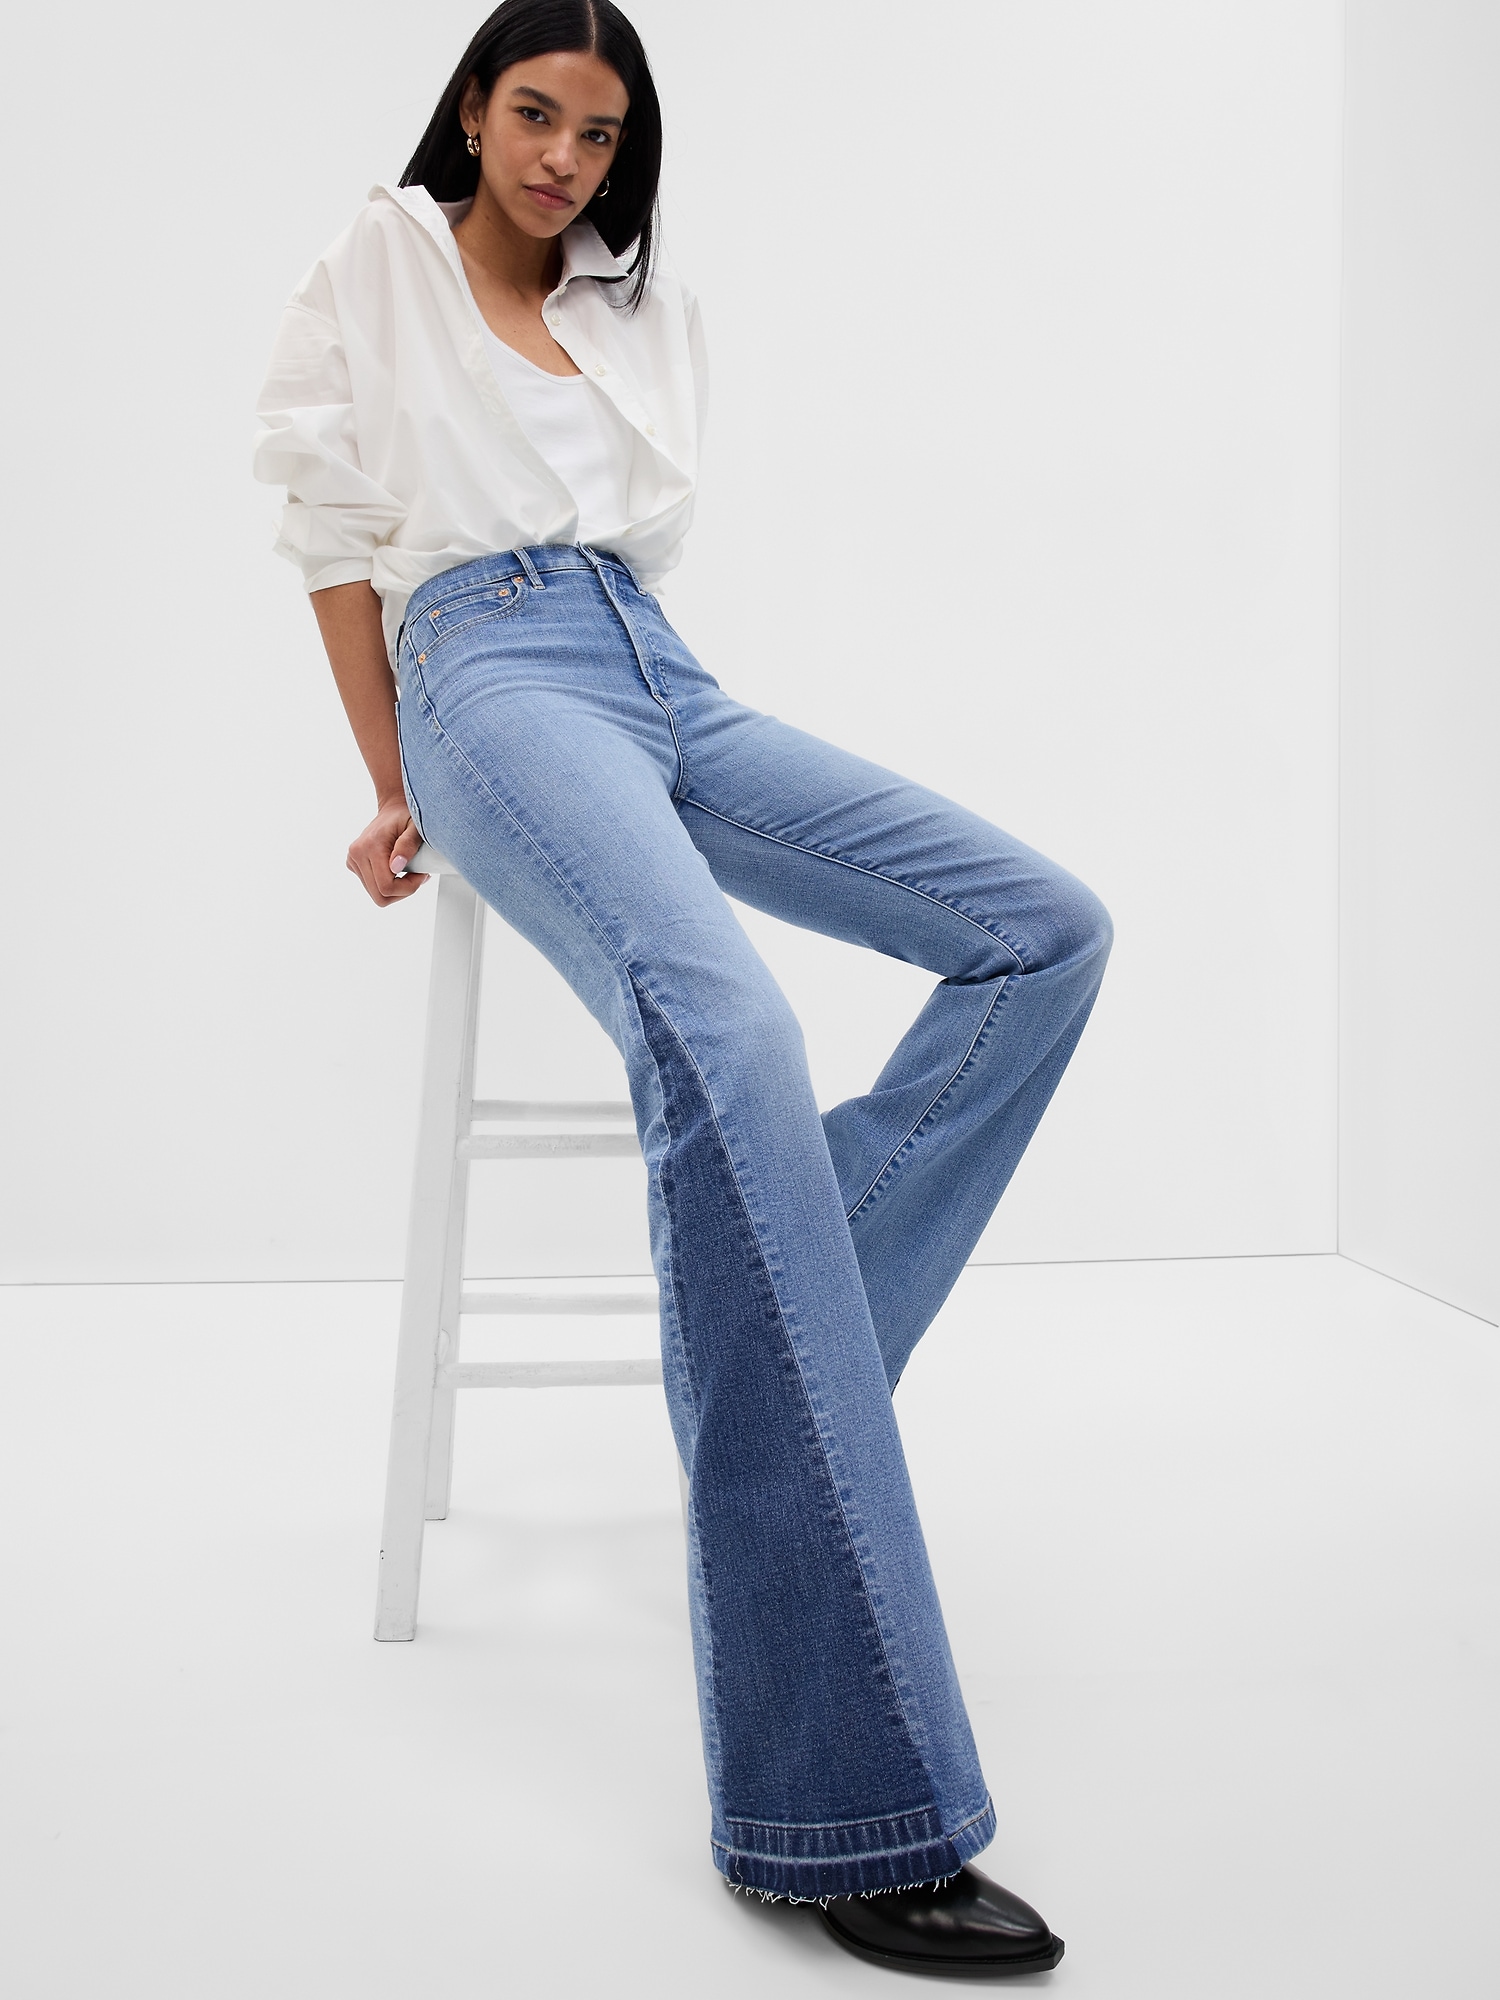 High Rise '70s Flare Jeans In Medium Indigo